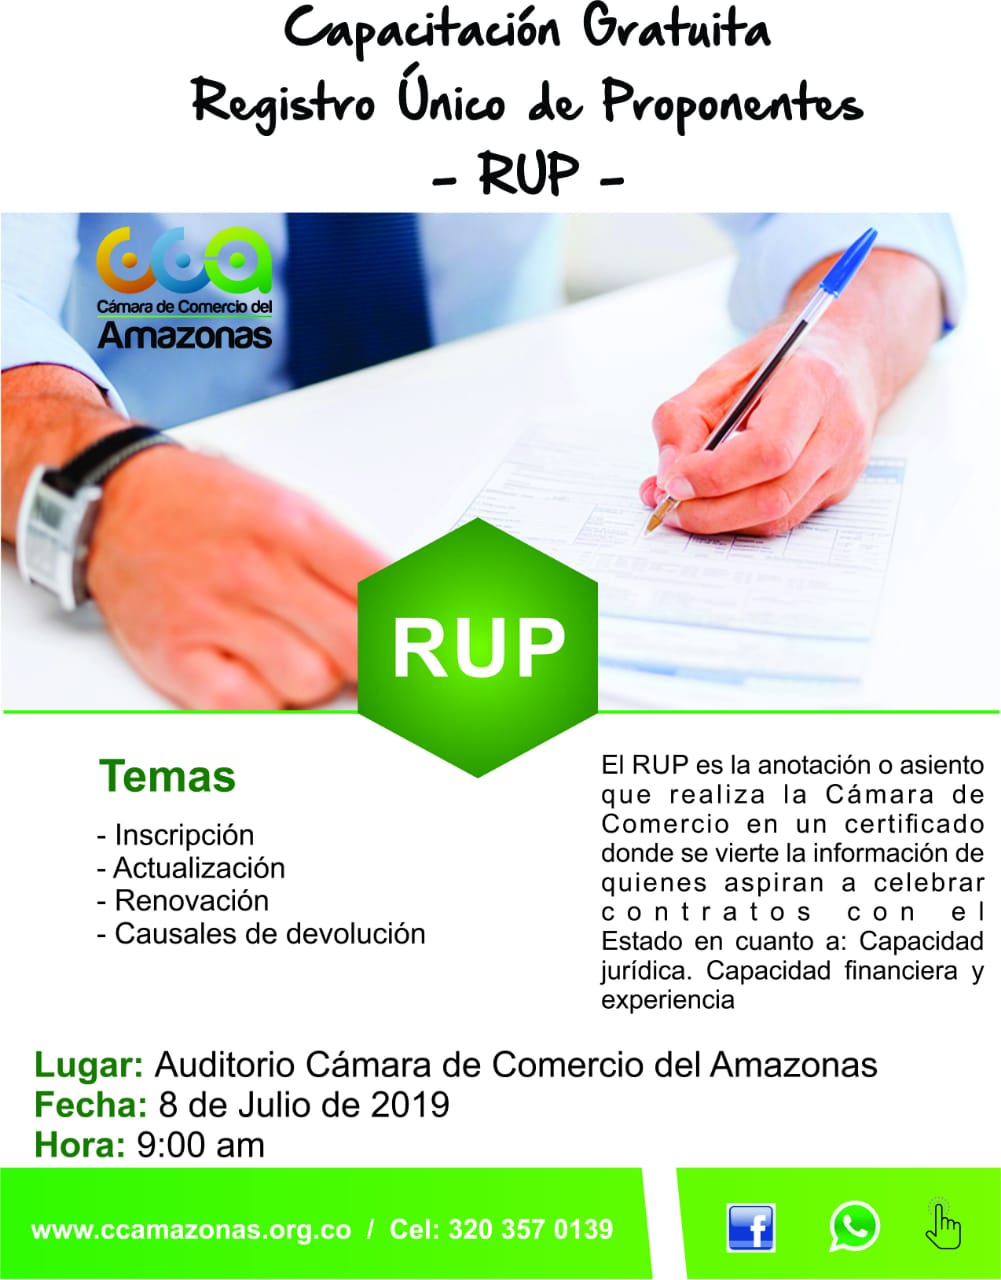 image for Capacitación Gratuita - Registro Único de Proponentes RUP